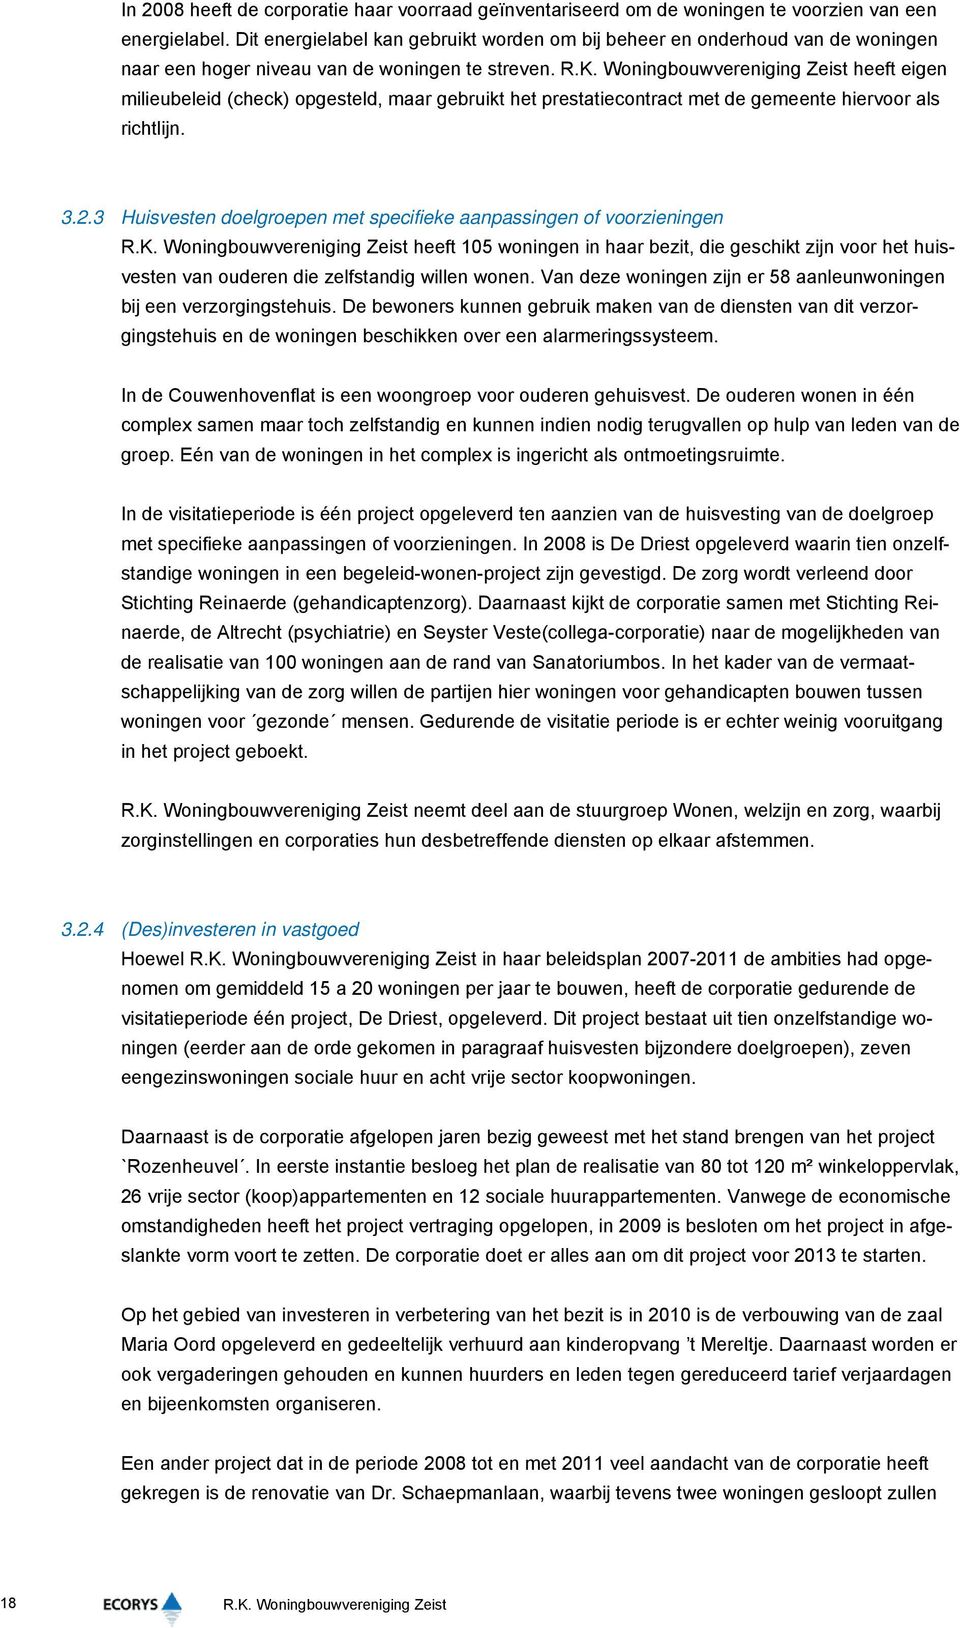 Woningbouwvereniging Zeist heeft eigen milieubeleid (check) opgesteld, maar gebruikt het prestatiecontract met de gemeente hiervoor als richtlijn. 3.2.